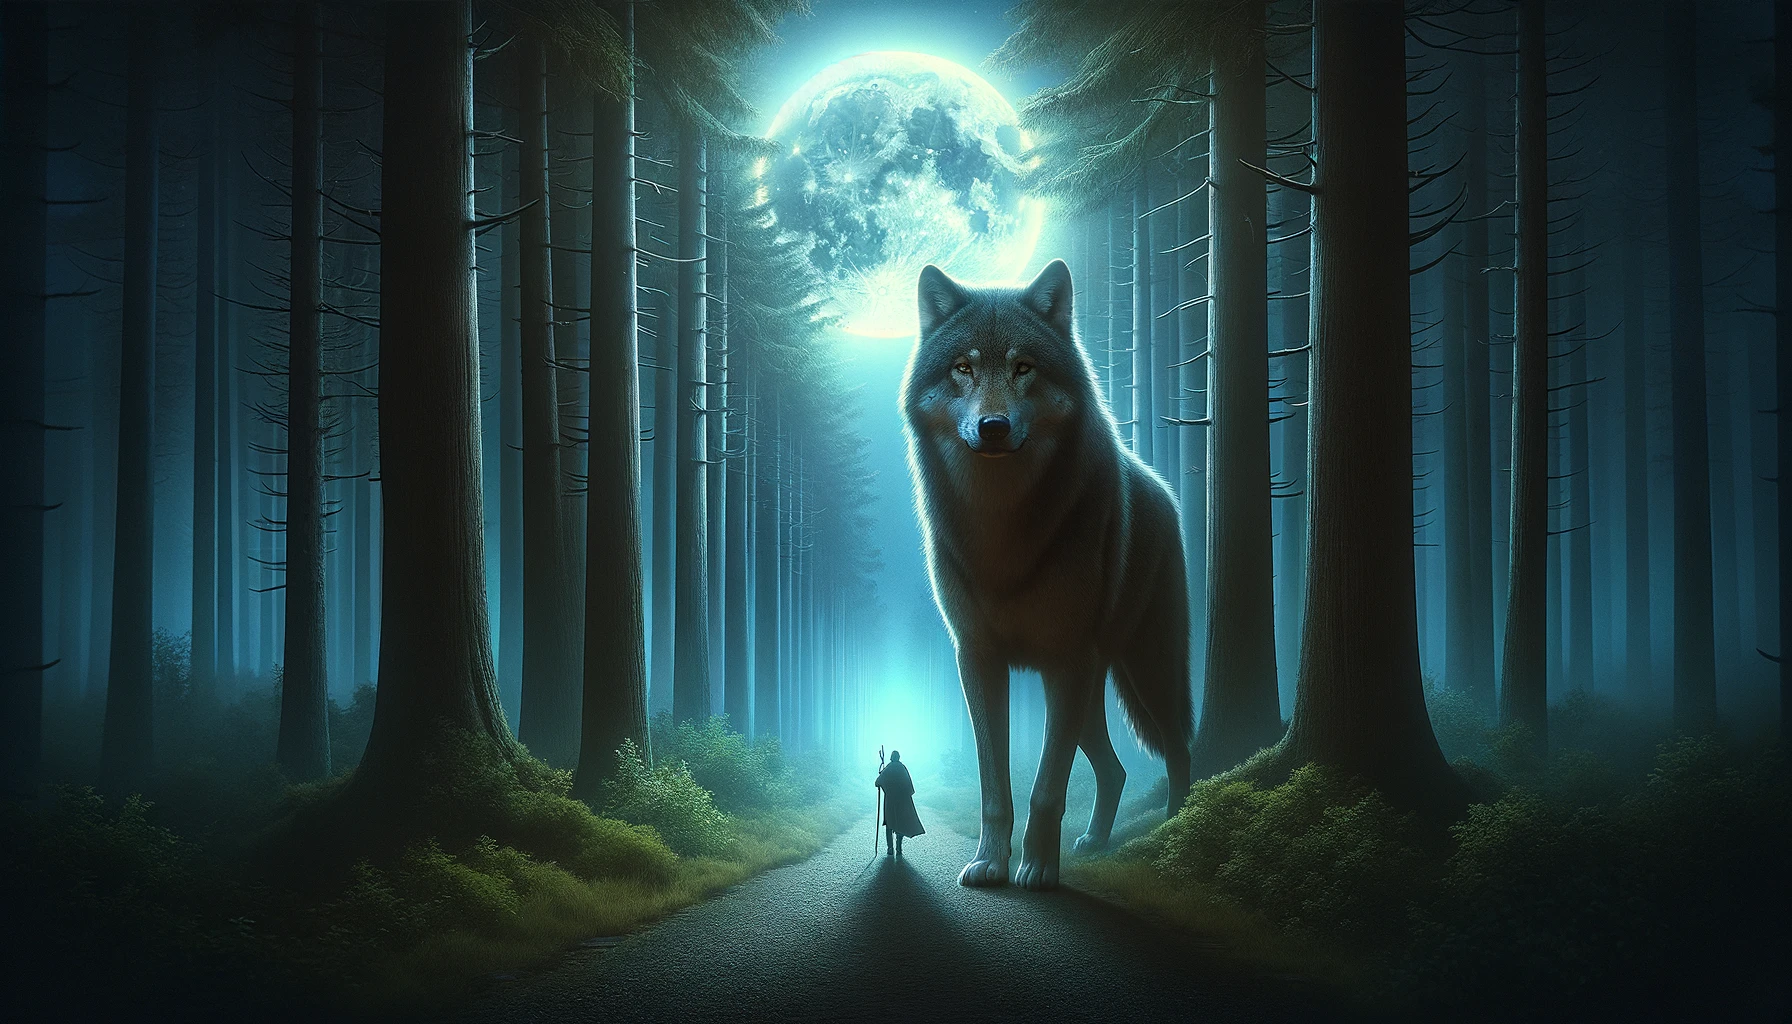 guía espiritual y protección en sueños con lobos